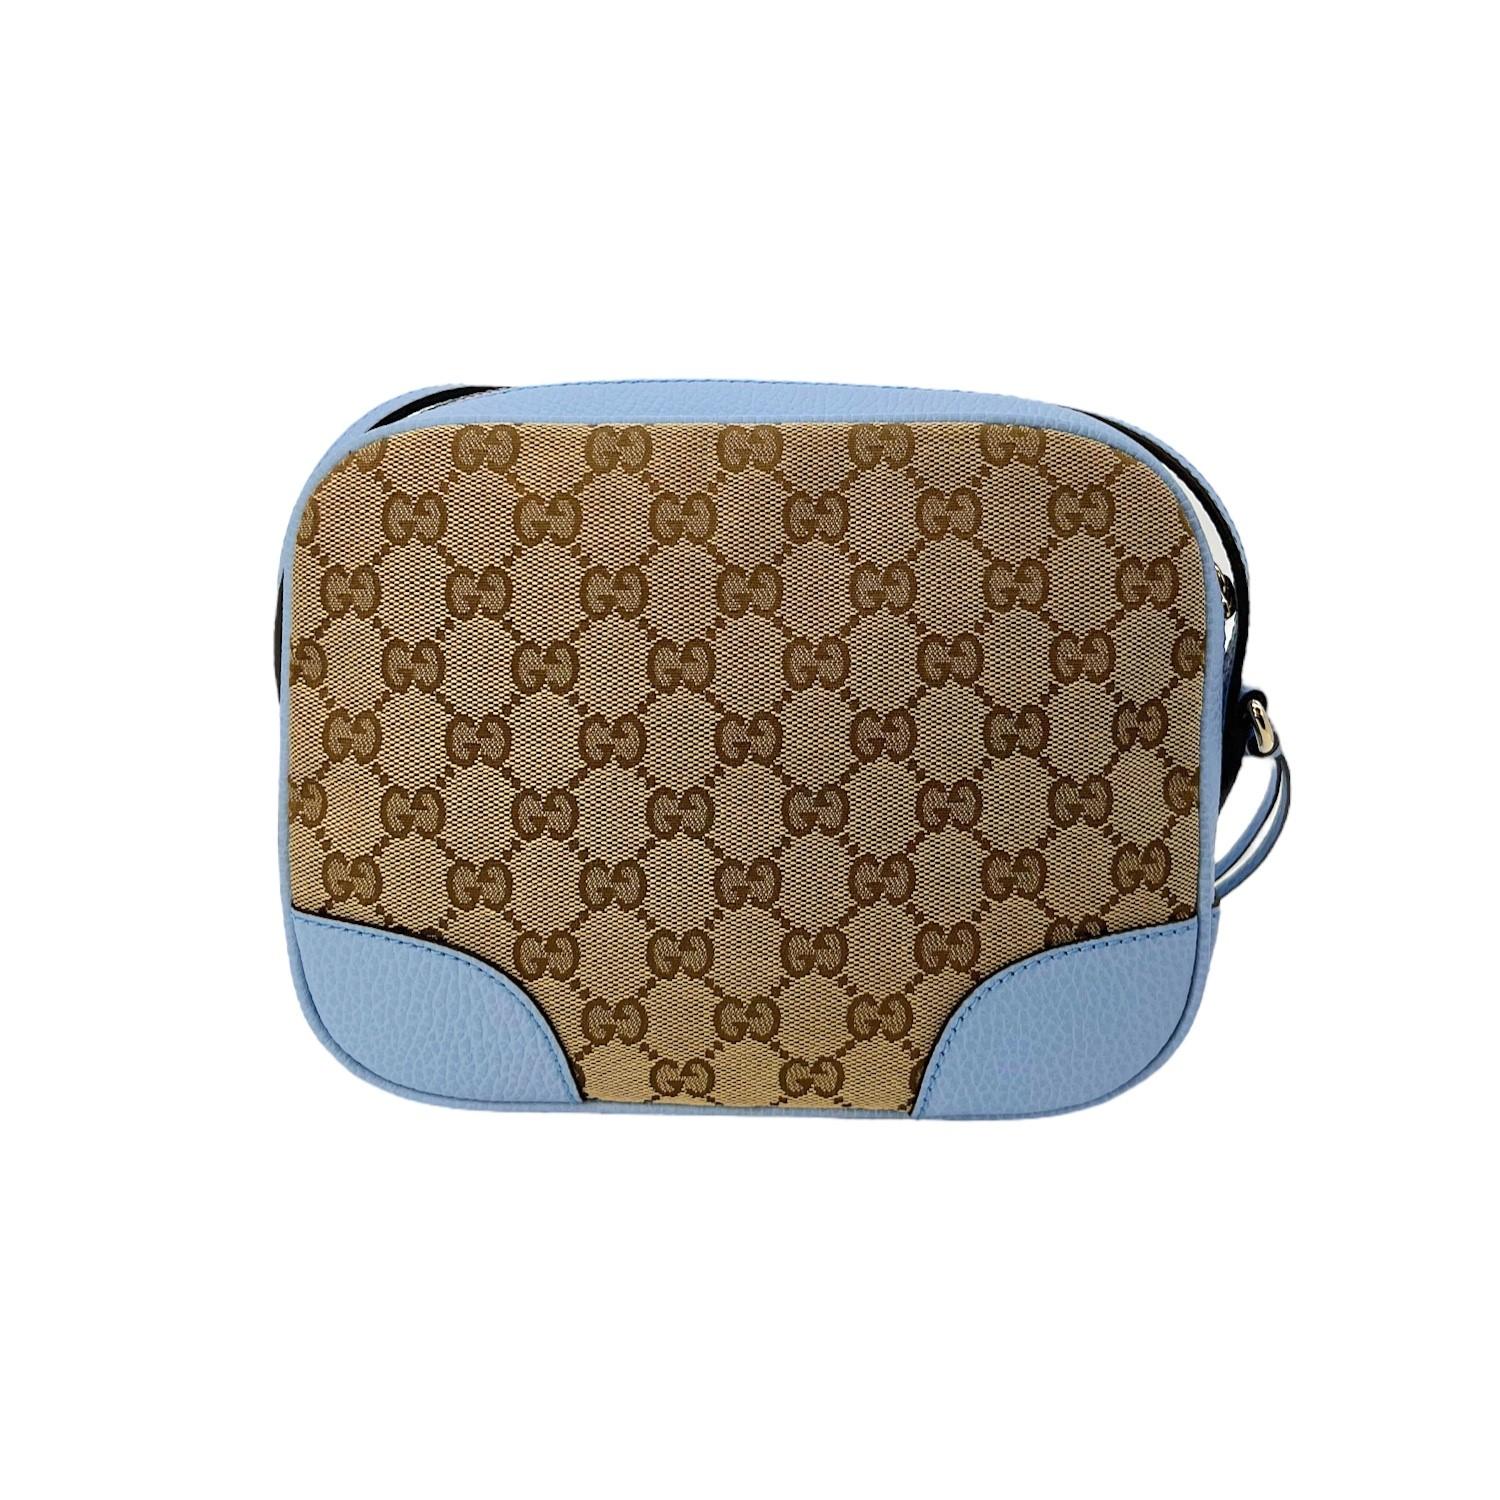 Ce sac à bandoulière Gucci GG Canvas Mini Bree a été fabriqué en Italie. Il est finement confectionné avec la toile classique Gucci GG, des bordures en cuir et des accessoires en métal doré. Il est doté d'une bandoulière plate en cuir réglable. Il